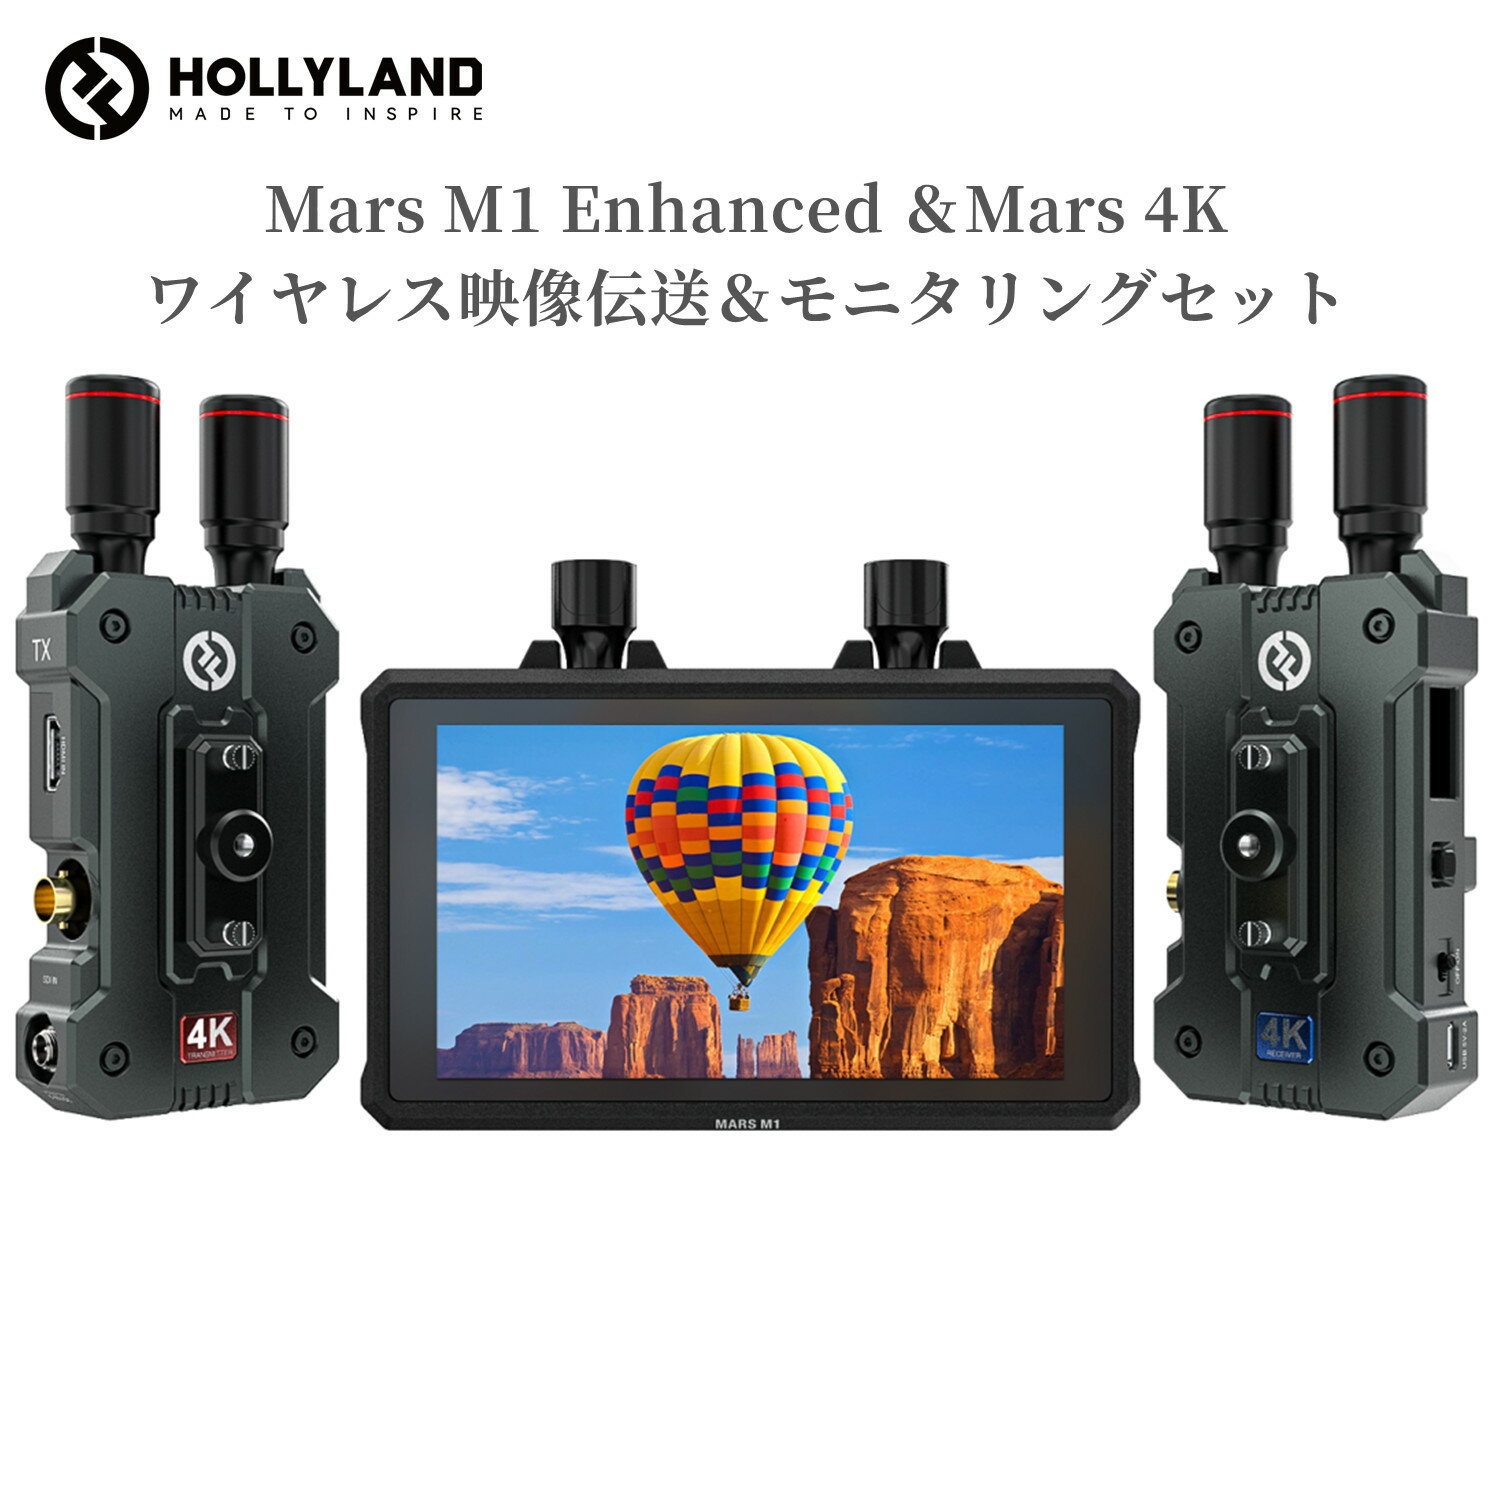 【特典付き】Hollyland ワイヤレス映像伝送＆モニタリングセット Mars M1 Enhanced カメラ用モニターとMars 4Kワイヤレス映像伝送装置セット 無線映像伝送システムとモニターが一体化 HDMI/SDI入出力 遠隔地から高品質な映像 音声を伝送 効率よく映像を監視して伝送する